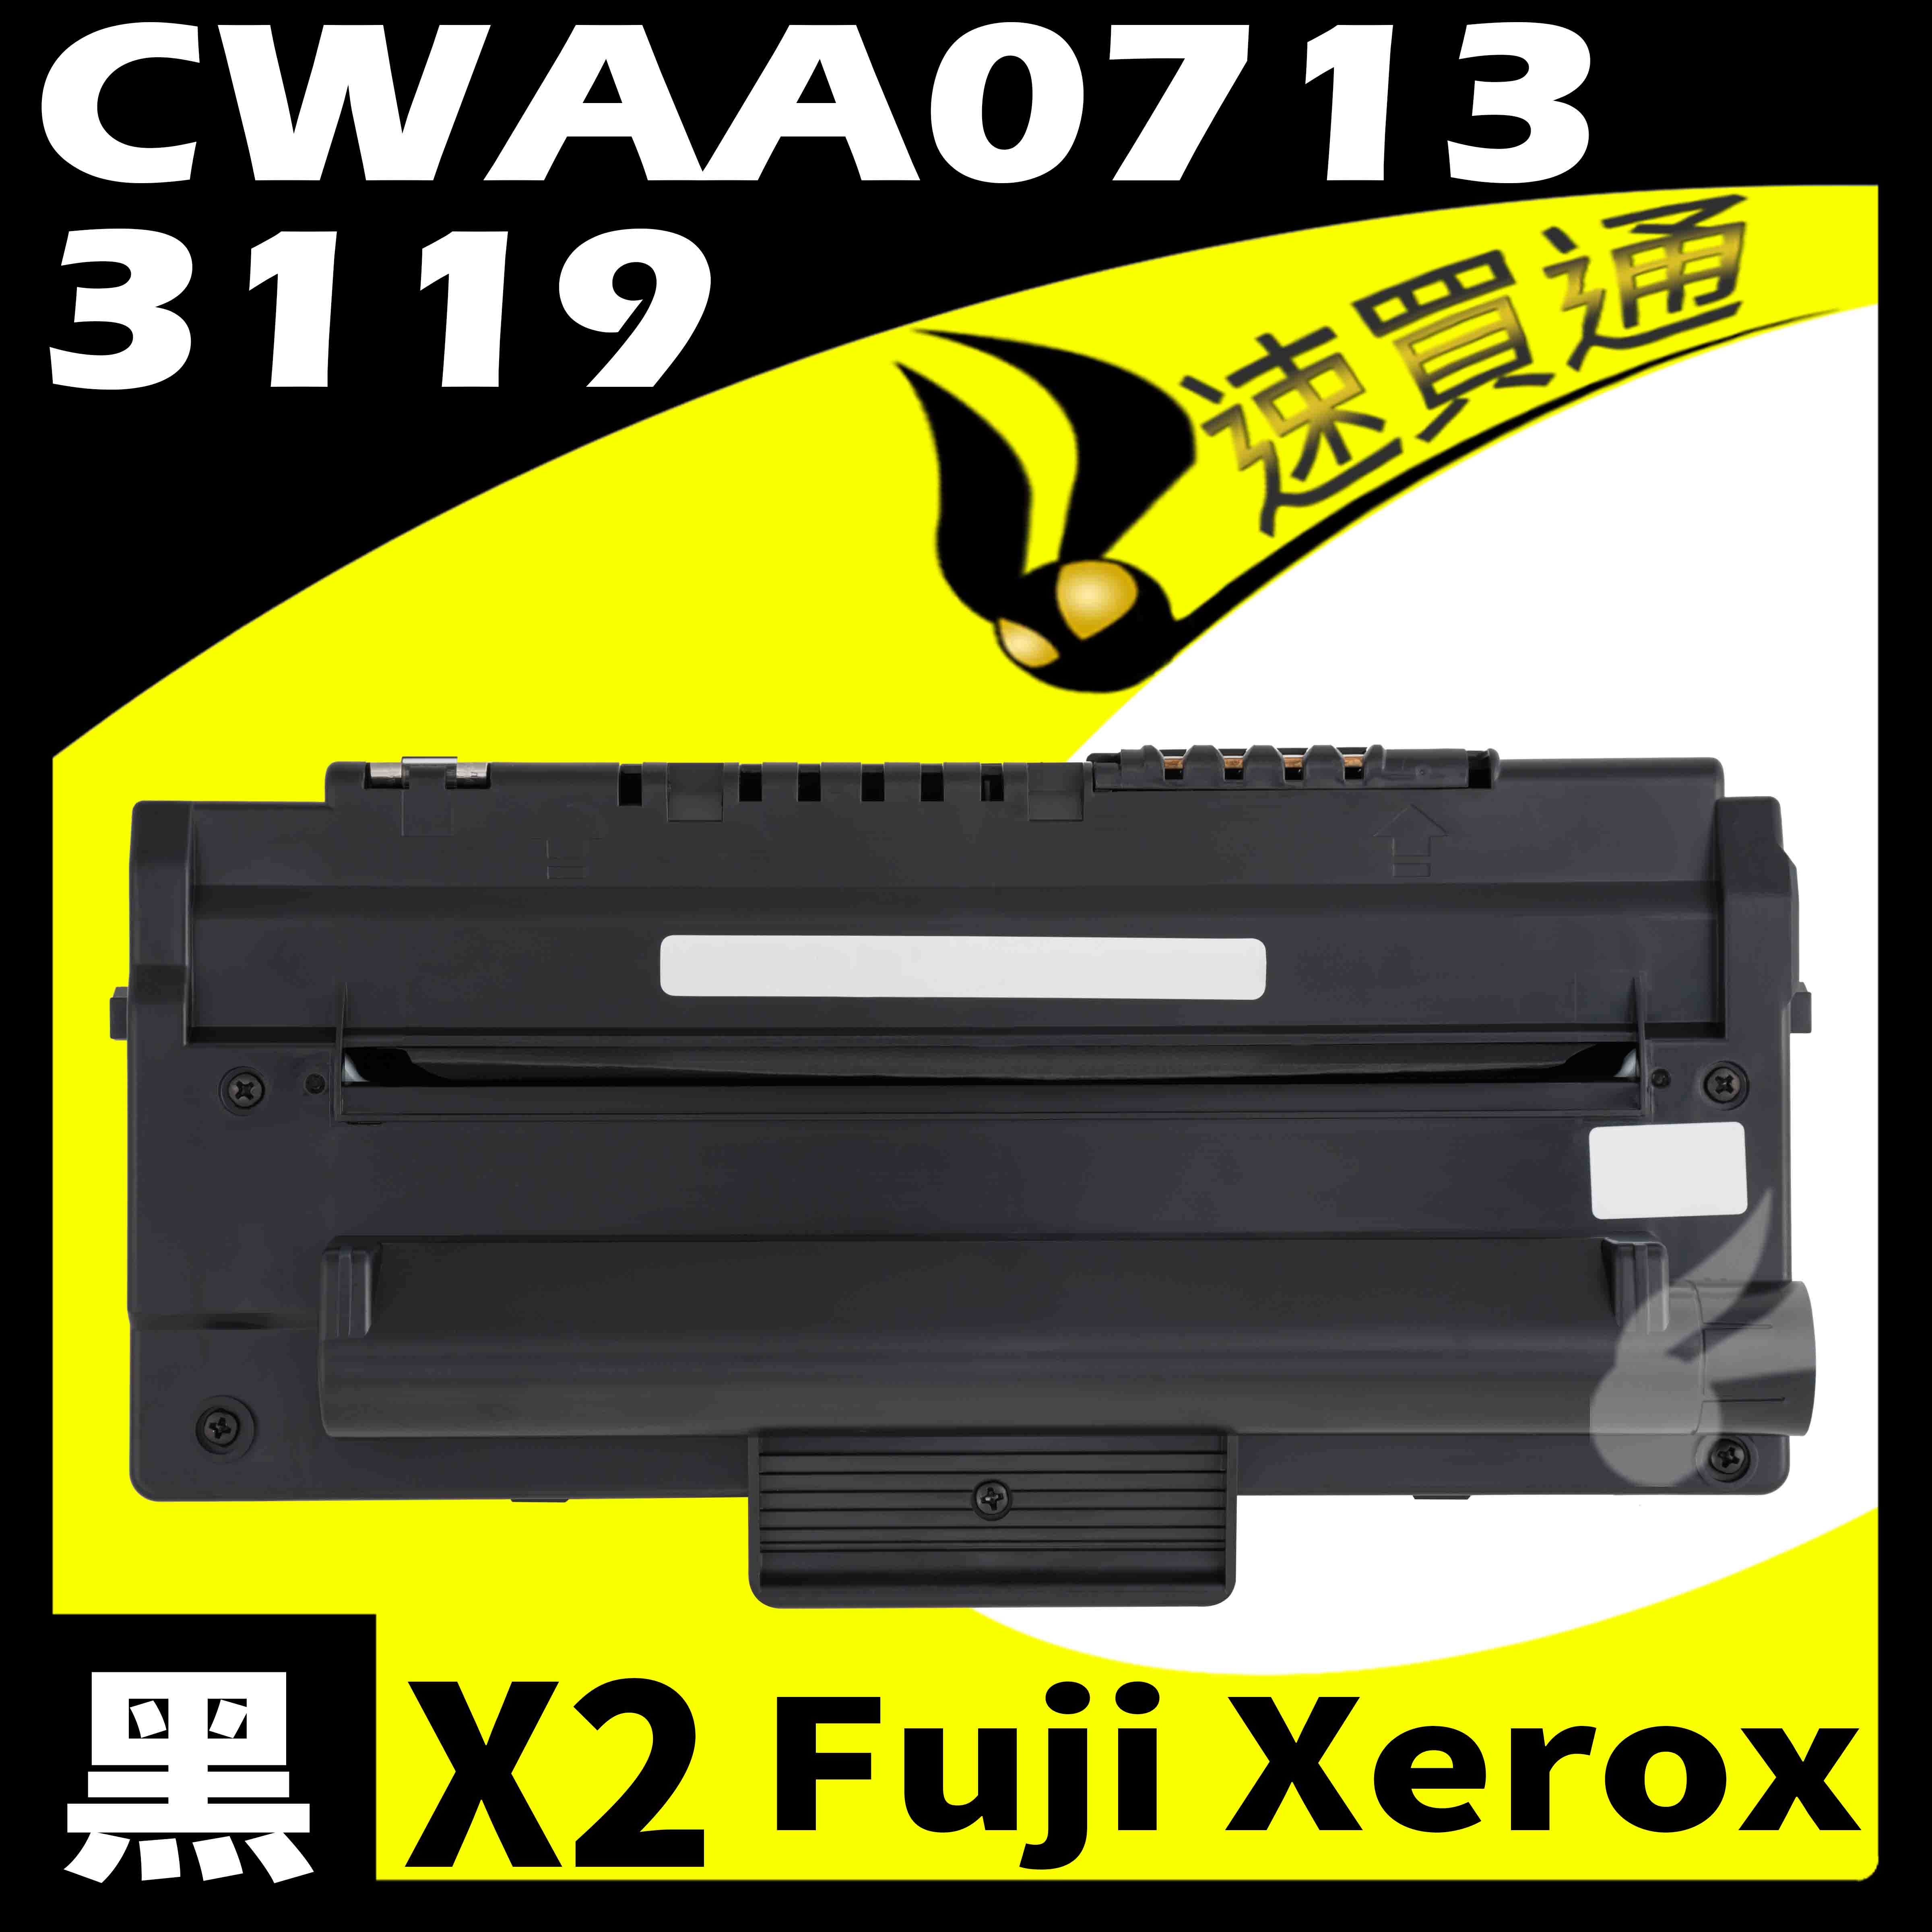 【速買通】超值2件組 Fuji Xerox 3119/CWAA0713 相容碳粉匣